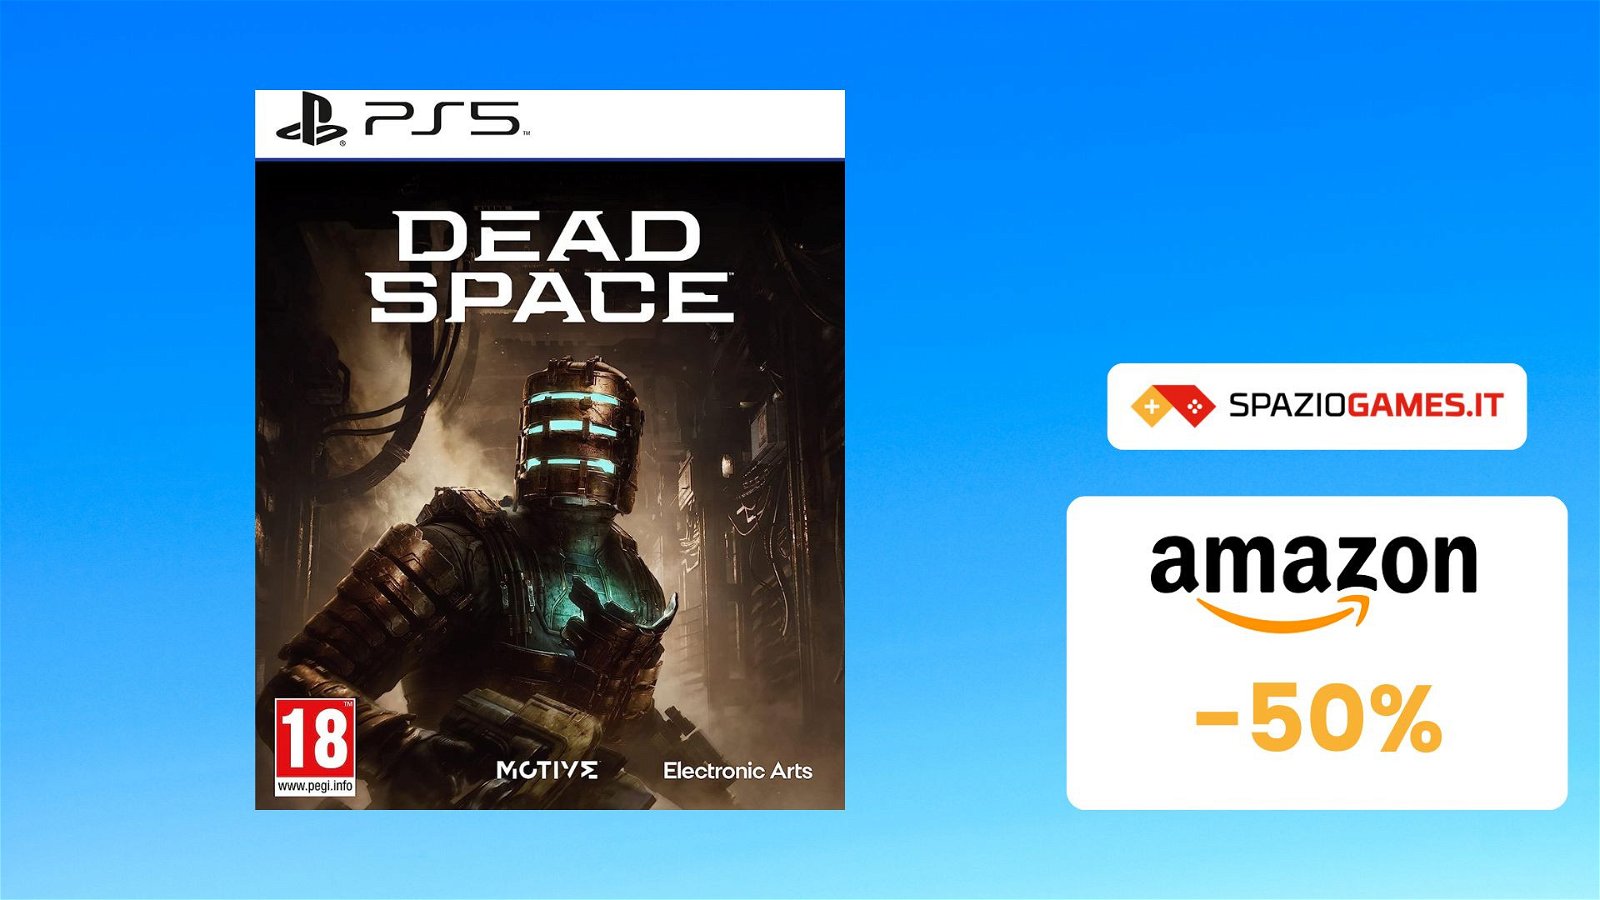 Dead Space per PS5 oggi vi costa la META'! (-50%)